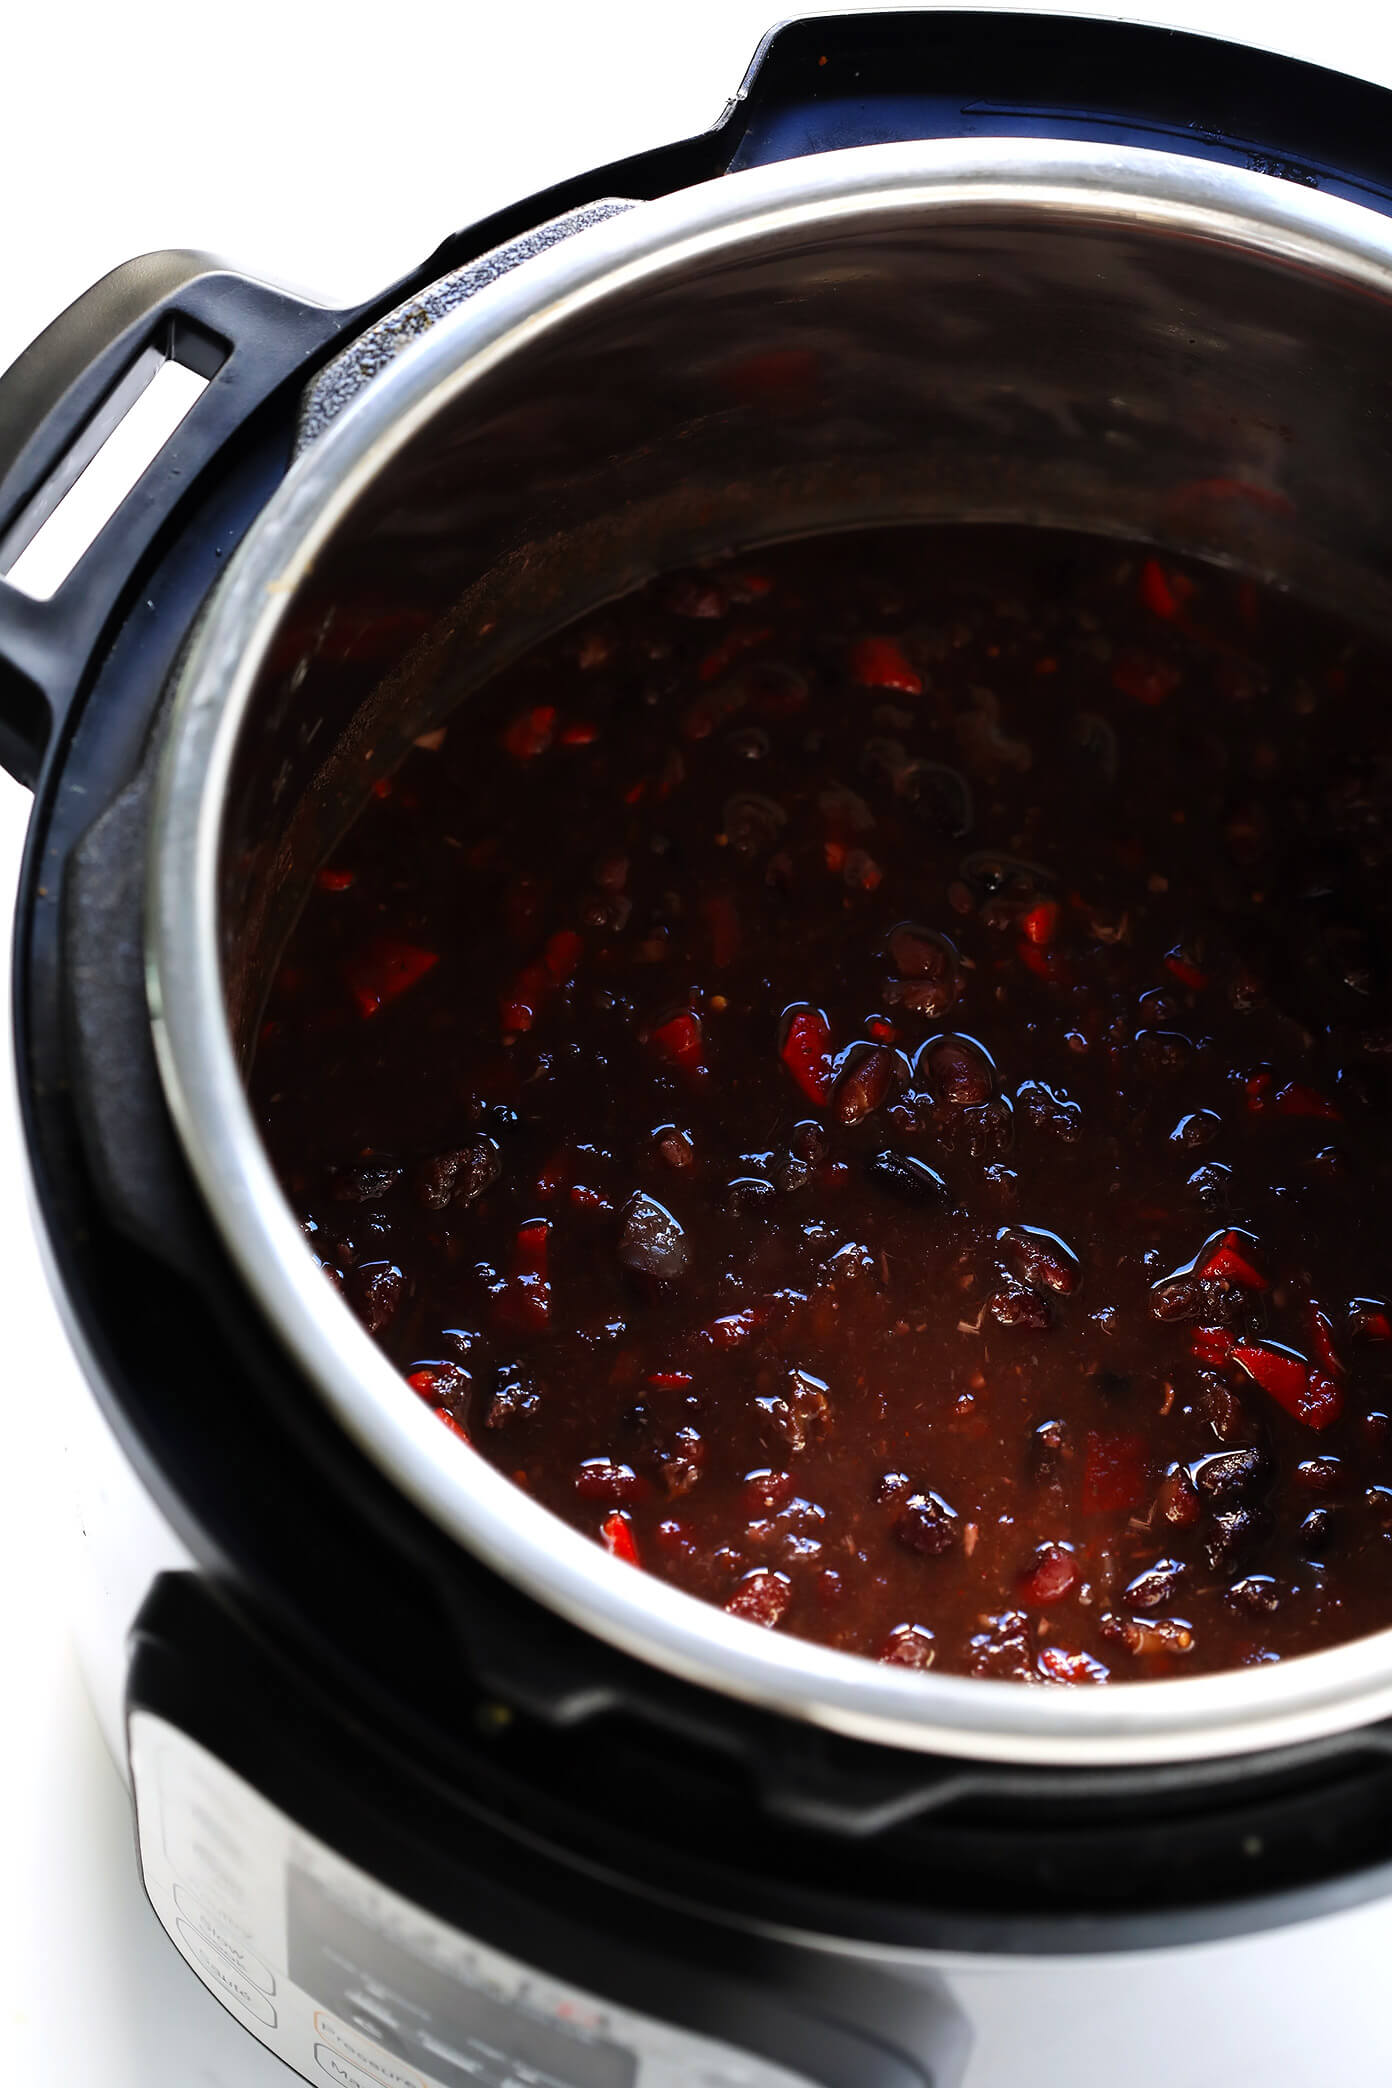 Comment faire la meilleure recette de chili aux haricots noirs